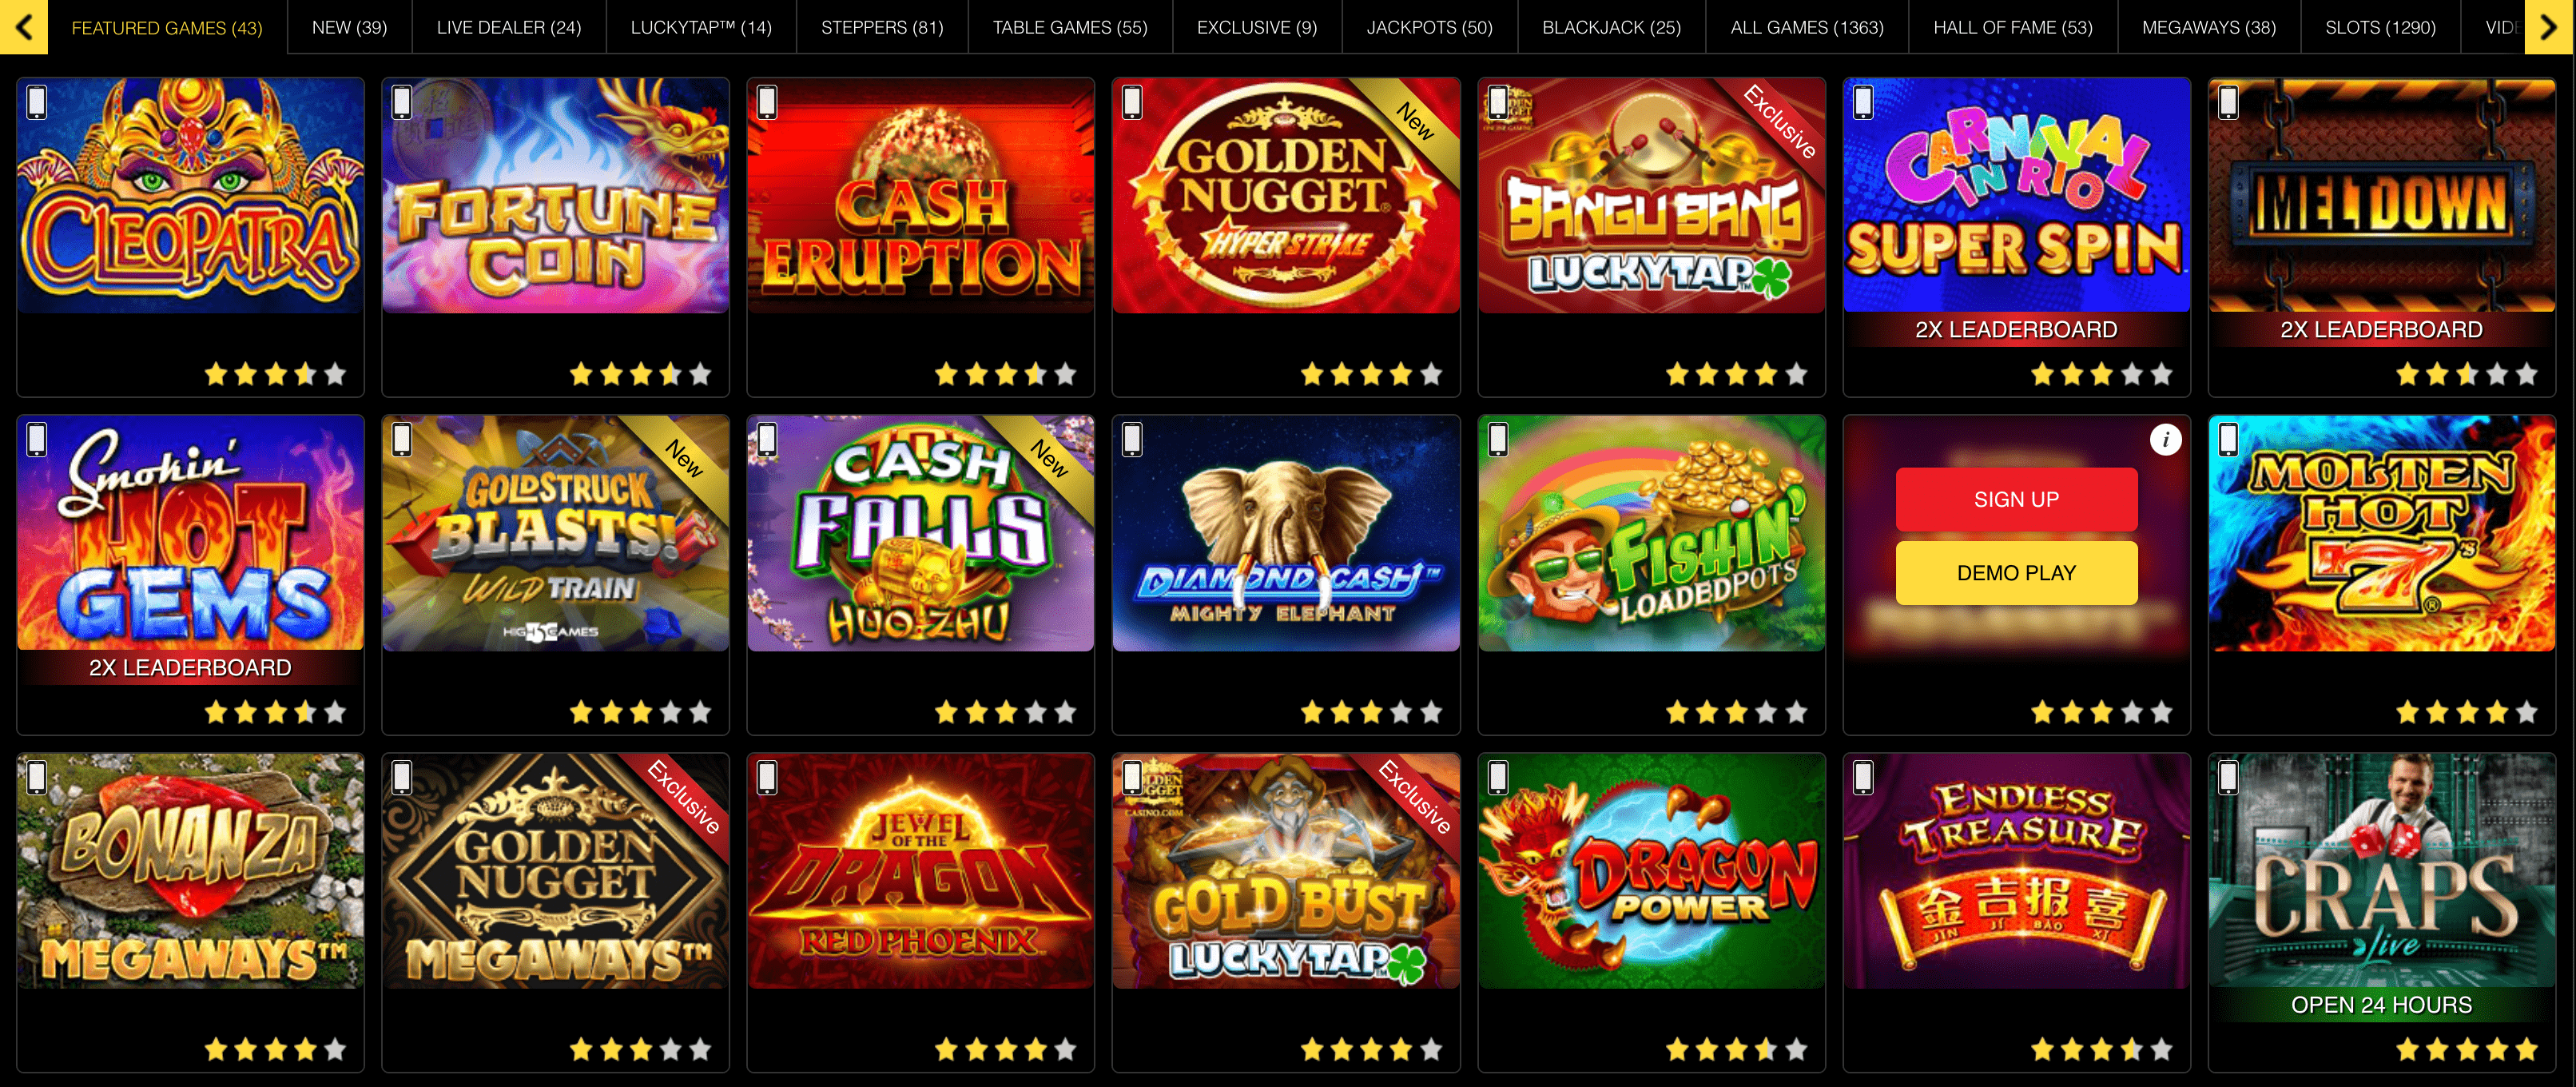 GoldenNugget Casino Games